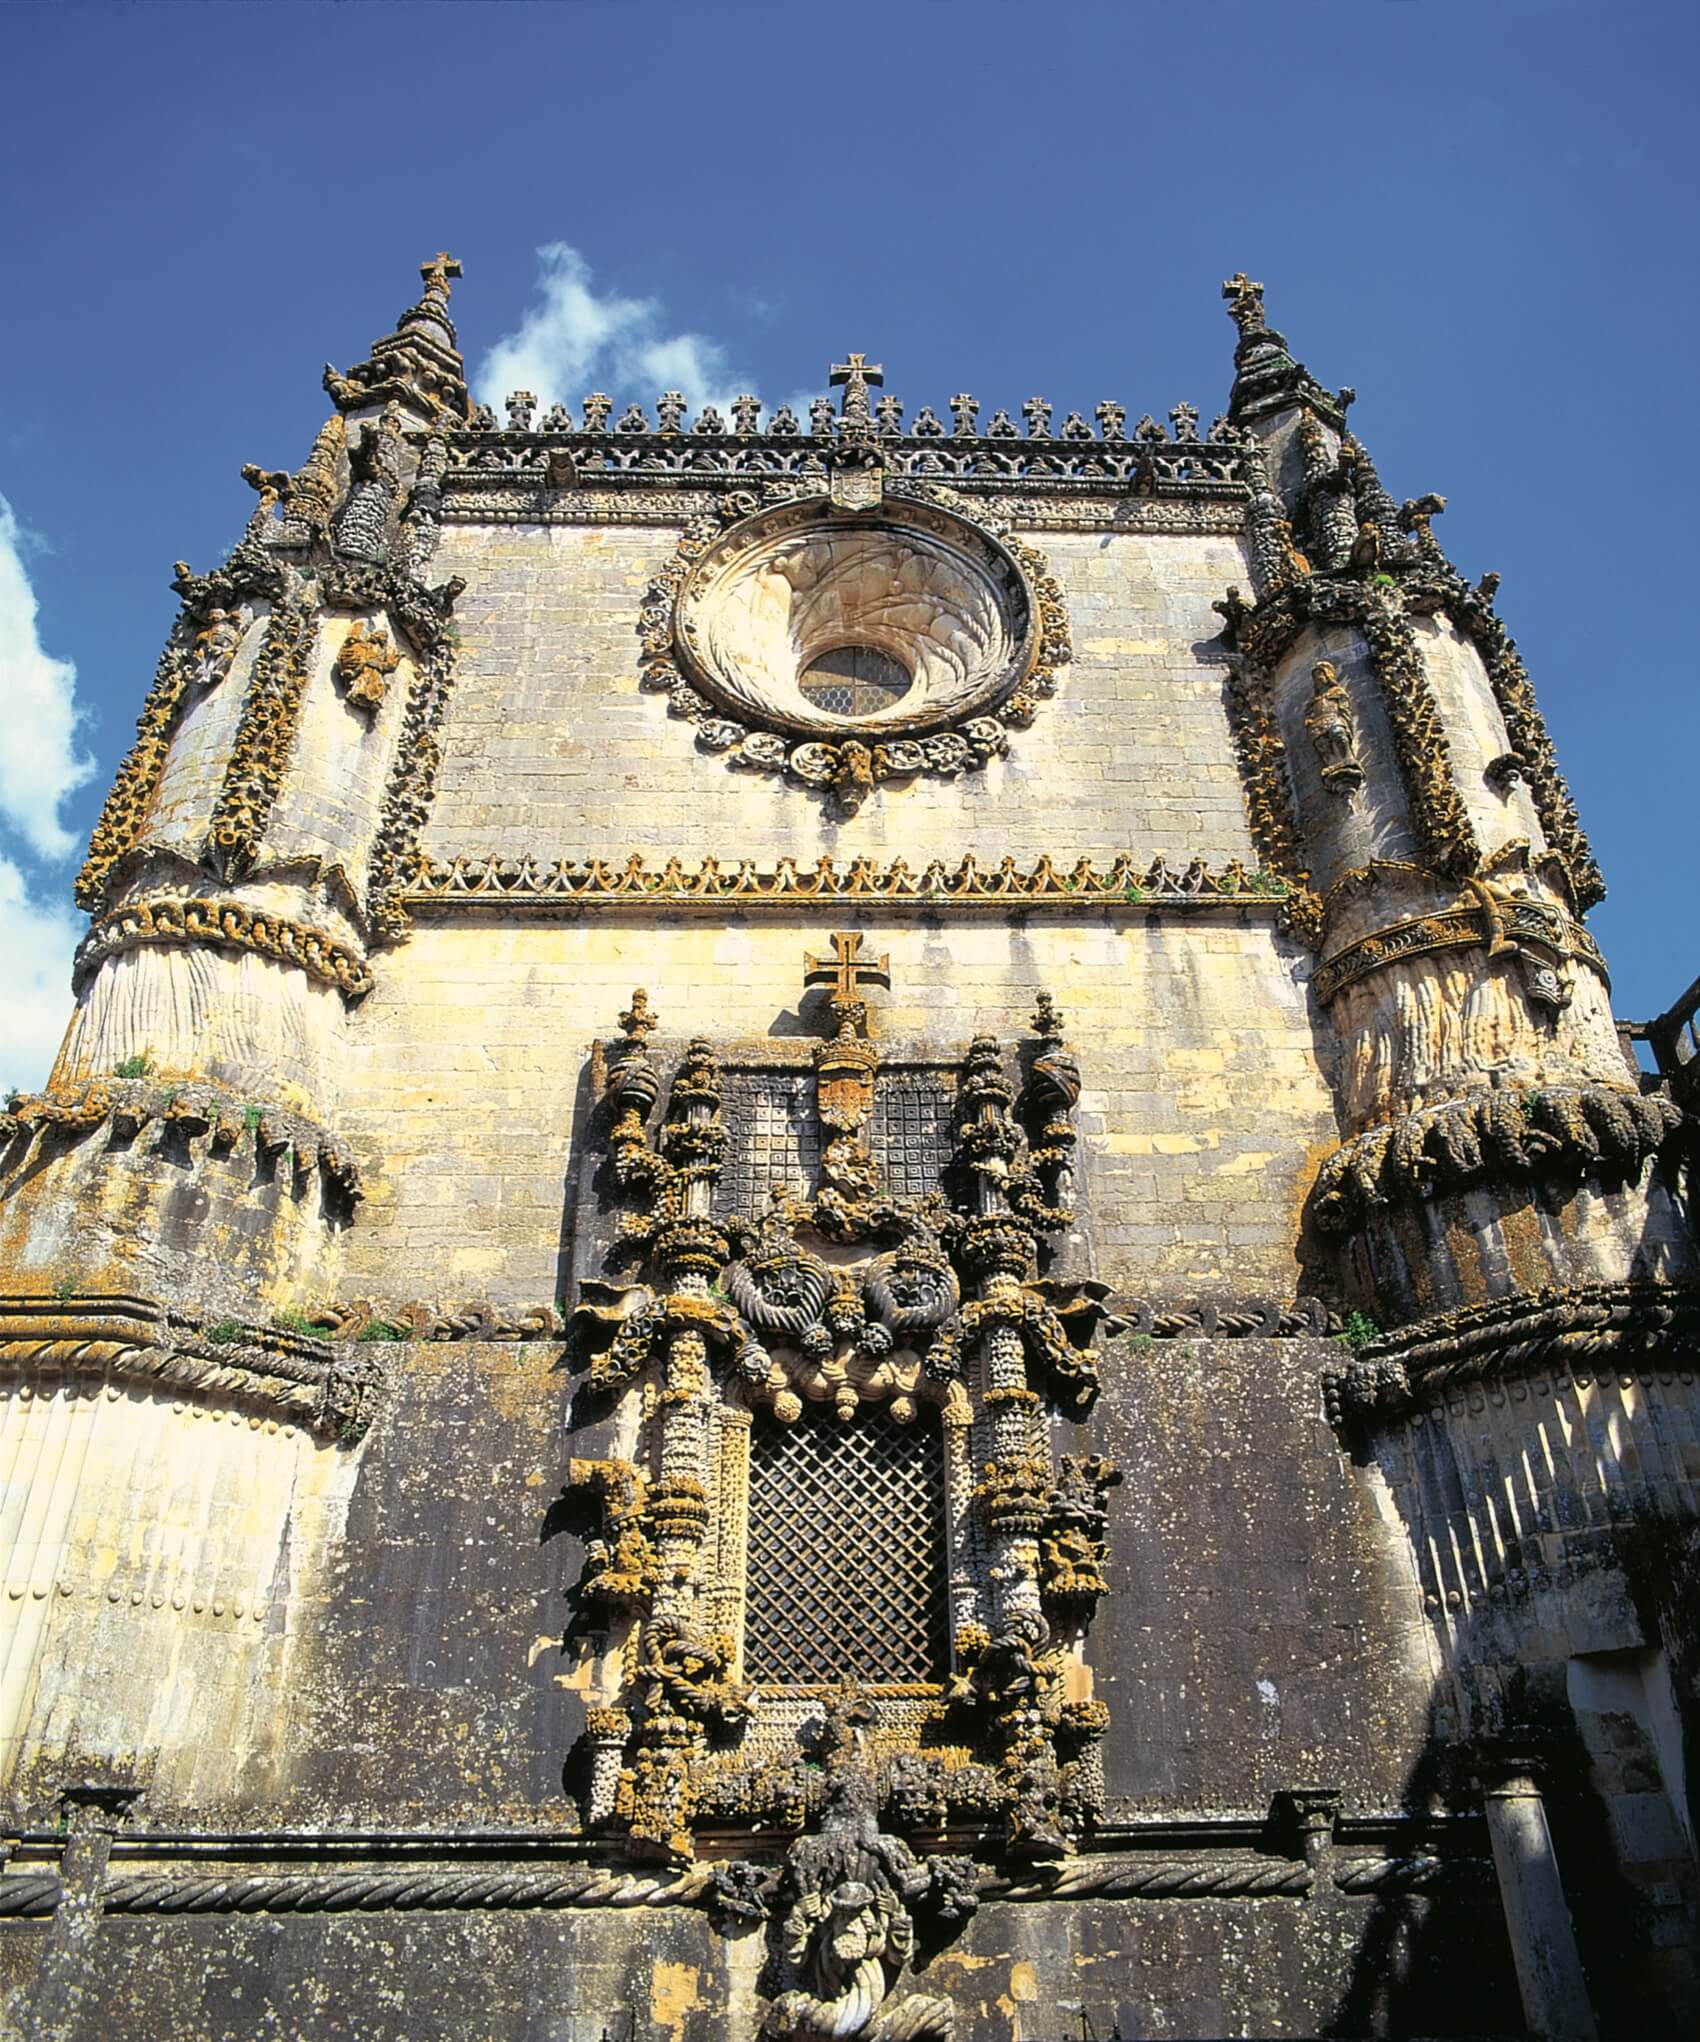 Turismo Centro de Portugal - Tomar Knights History